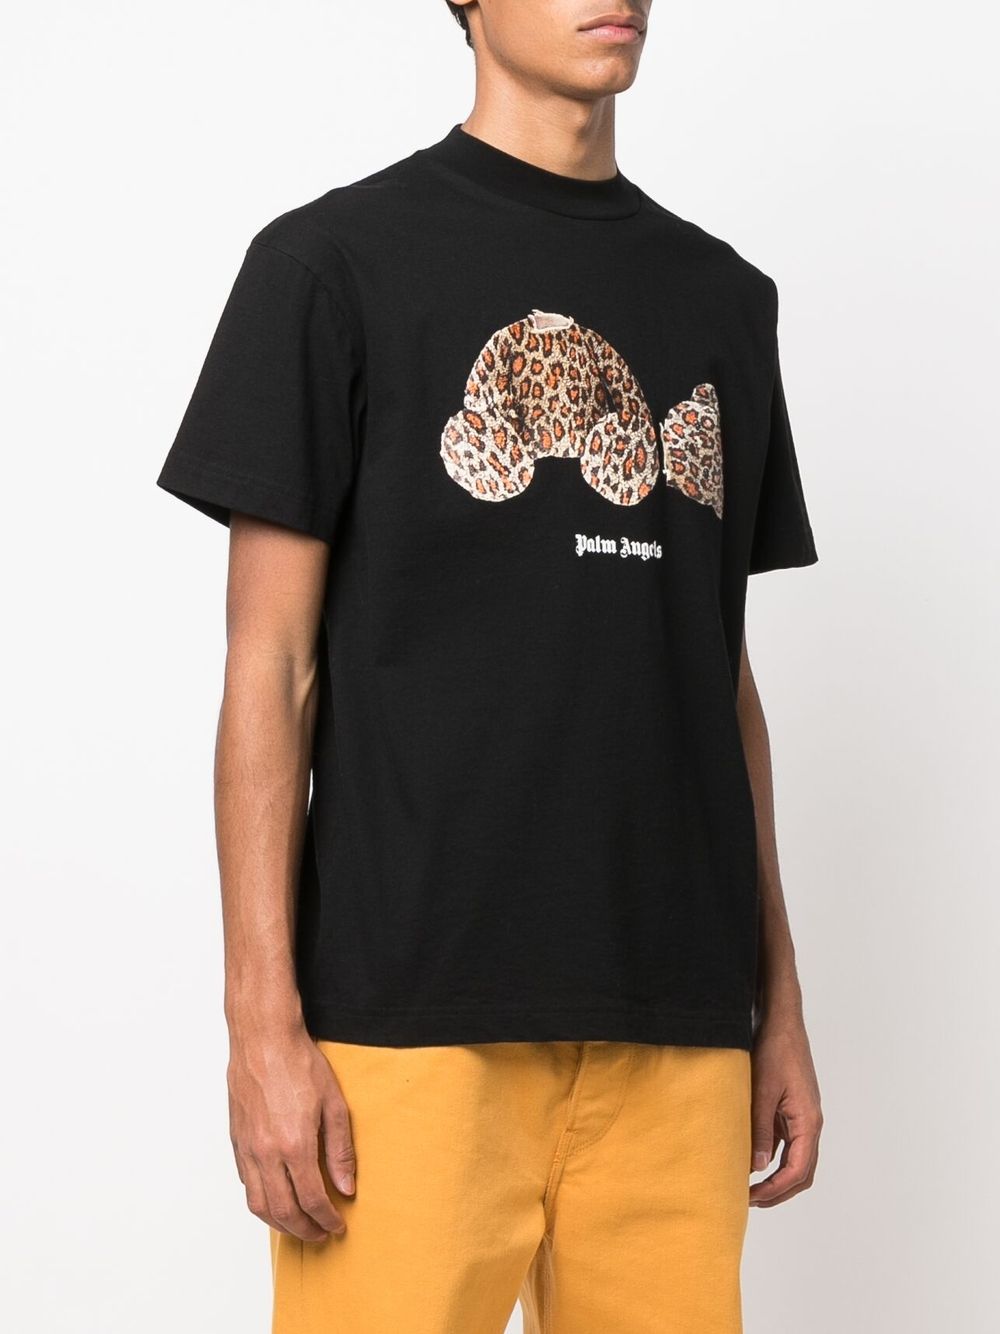 PALM ANGELS Leopard Bear Classic T-Shirt Black - MAISONDEFASHION.COM